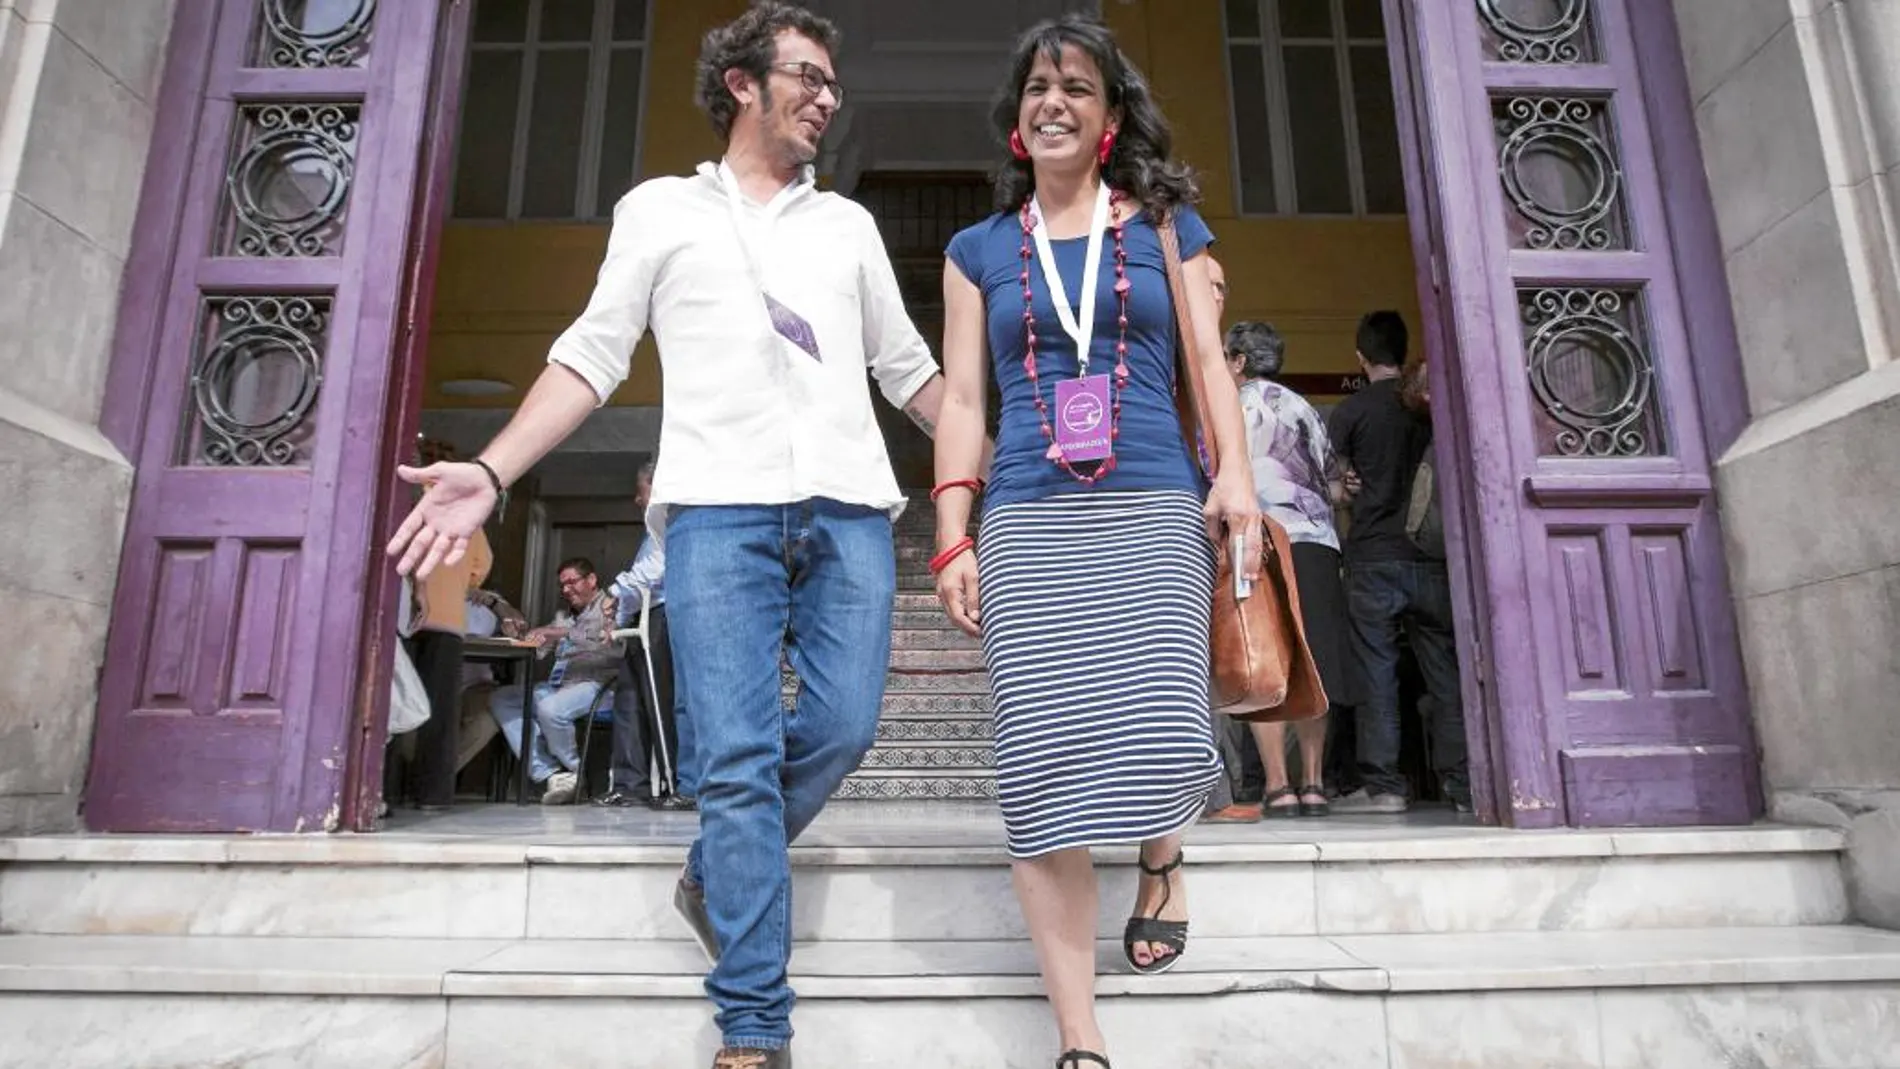 La secretaria general de Podemos en Andalucía, Teresa Rodríguez, acudió a votar con su novio José María González, el candidato de Podemos a la alcaldía